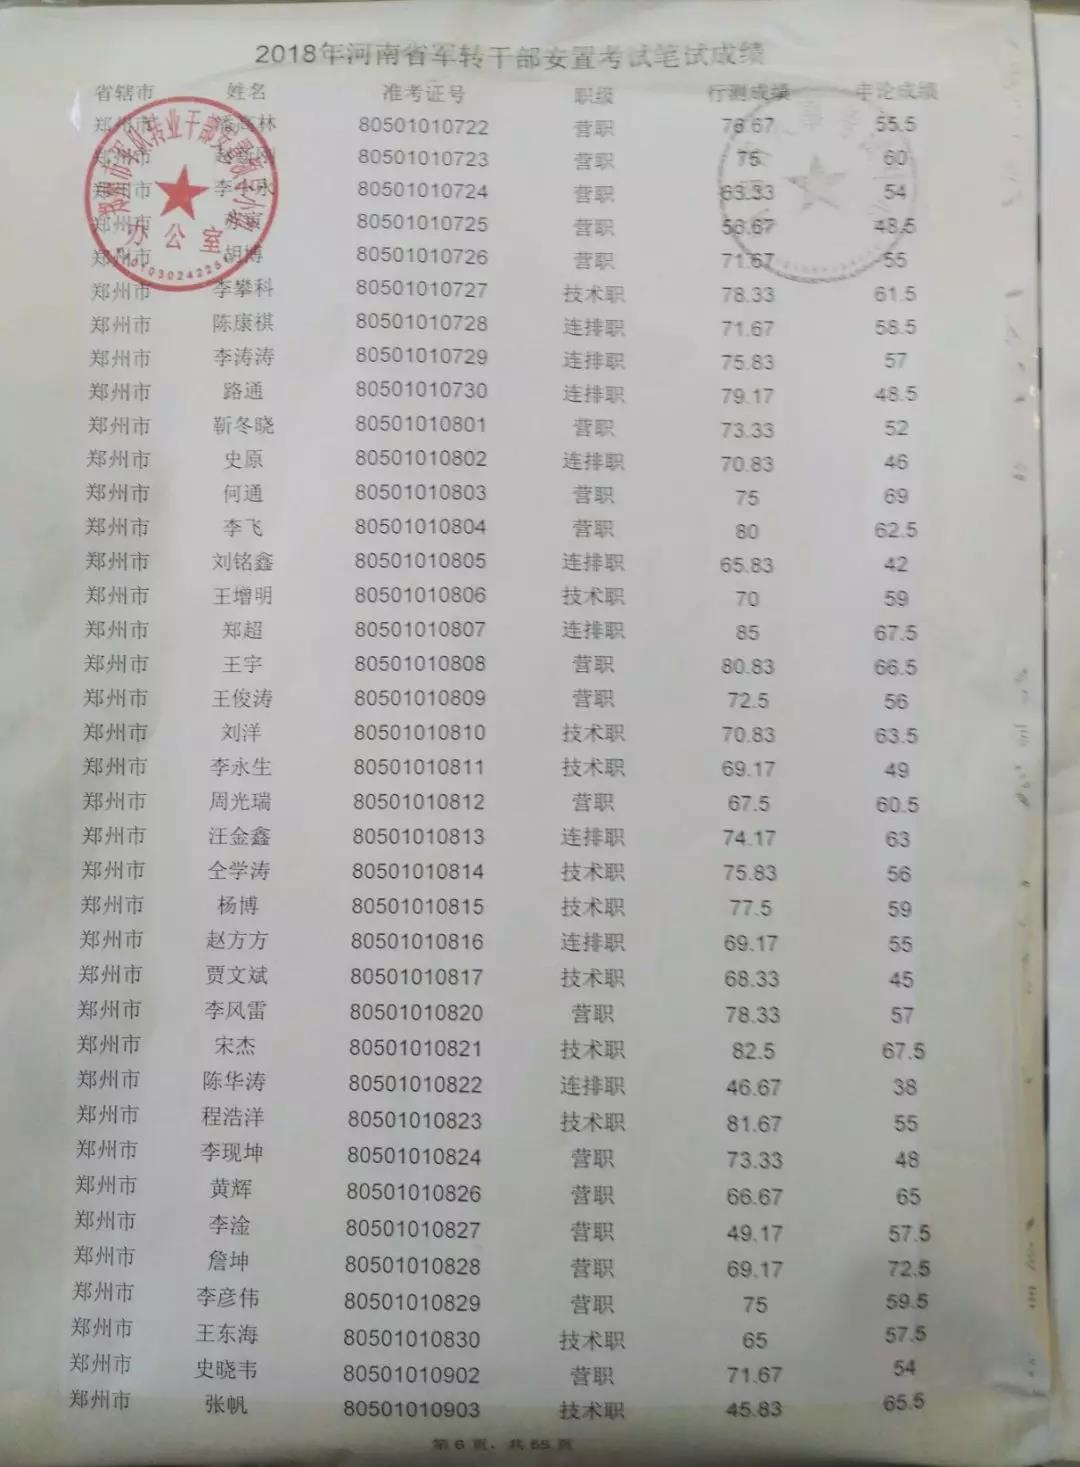 2018年河南省军转干部安置考试笔试成绩查询